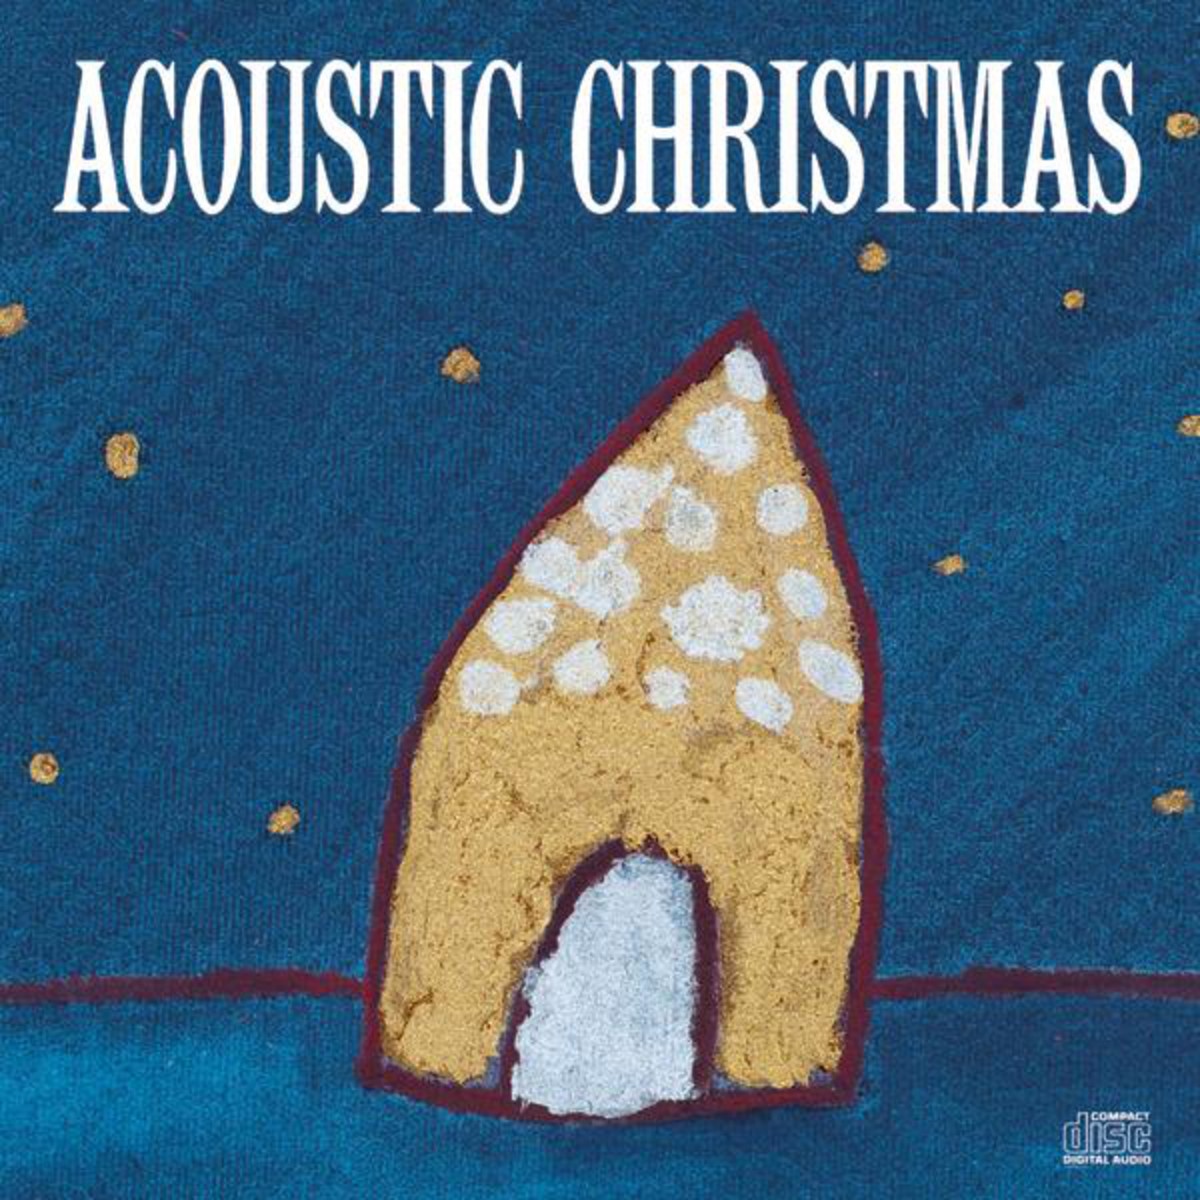 Now We Have Love (Acoustic Christmas Album Version) - unplug